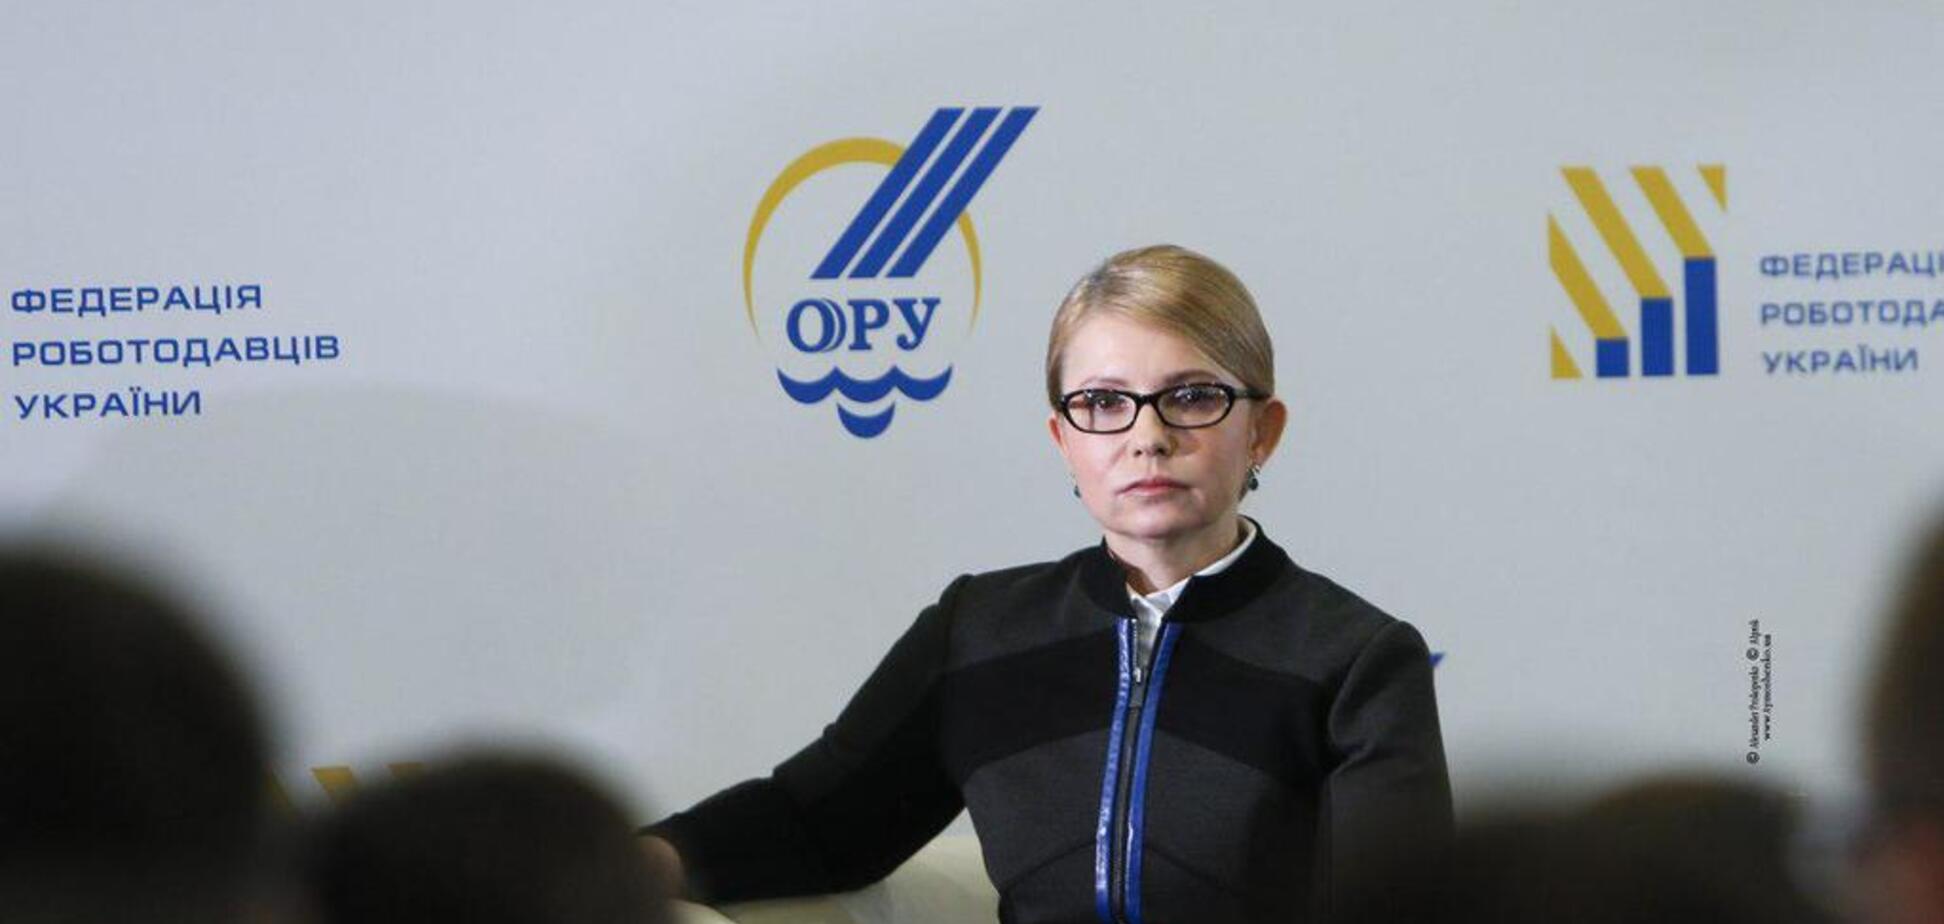 Роботодавці підтримали Юлію Тимошенко: укладено Меморандум про співпрацю